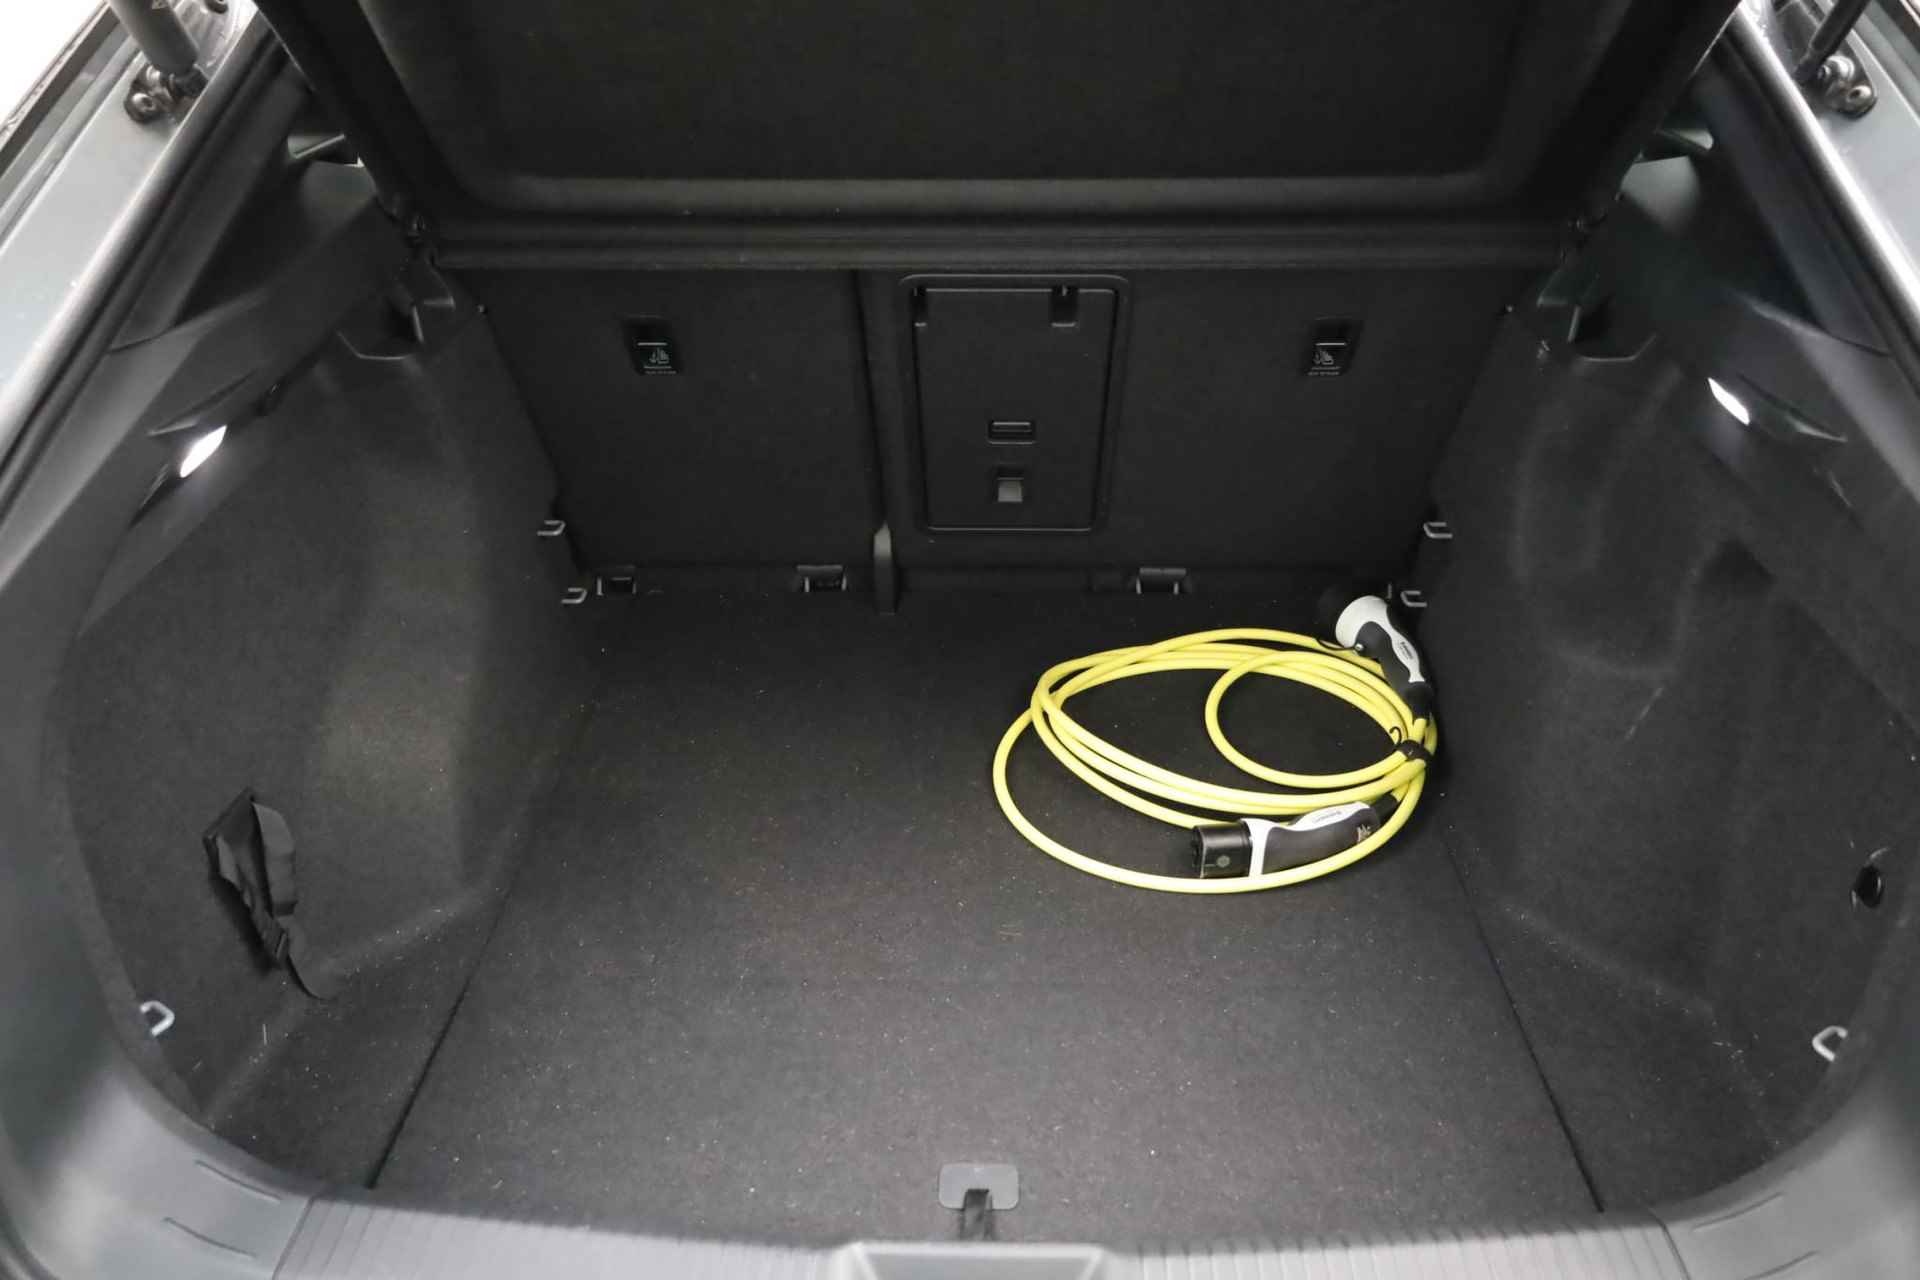 Volkswagen ID.5 Pro 77 kWh NL auto, nieuw door ons verkocht en geleverd, designpakket (led matrix privacy glas led strip tussen koplampen), comfort pakket (stoel en stuurwiel en voorruit verwarming), navigatie pakket, 20" drammen lmv, assitance pakket, keyless entry, achteruitrijcamera - 39/40